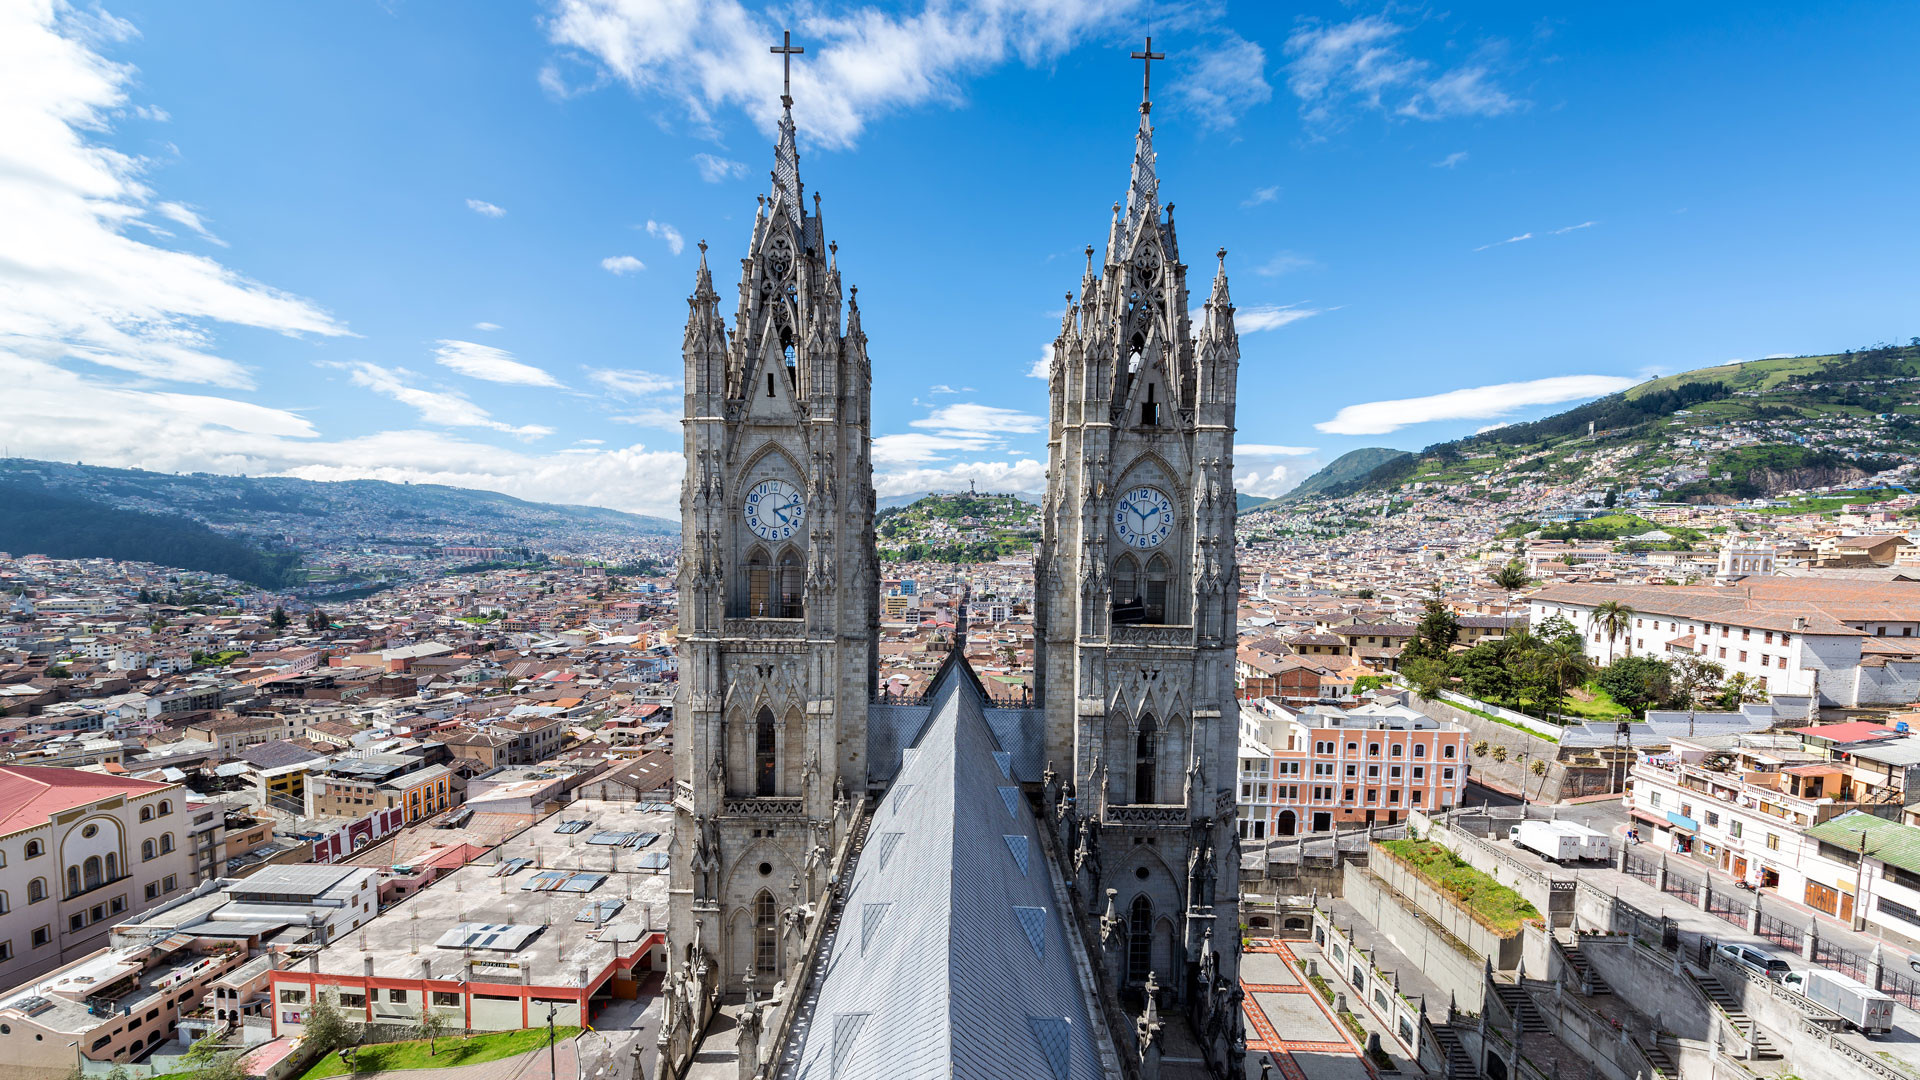 Quito travels, Experience Ecuador, Maria Erasmus, Experience Quito, 1920x1080 Full HD Desktop